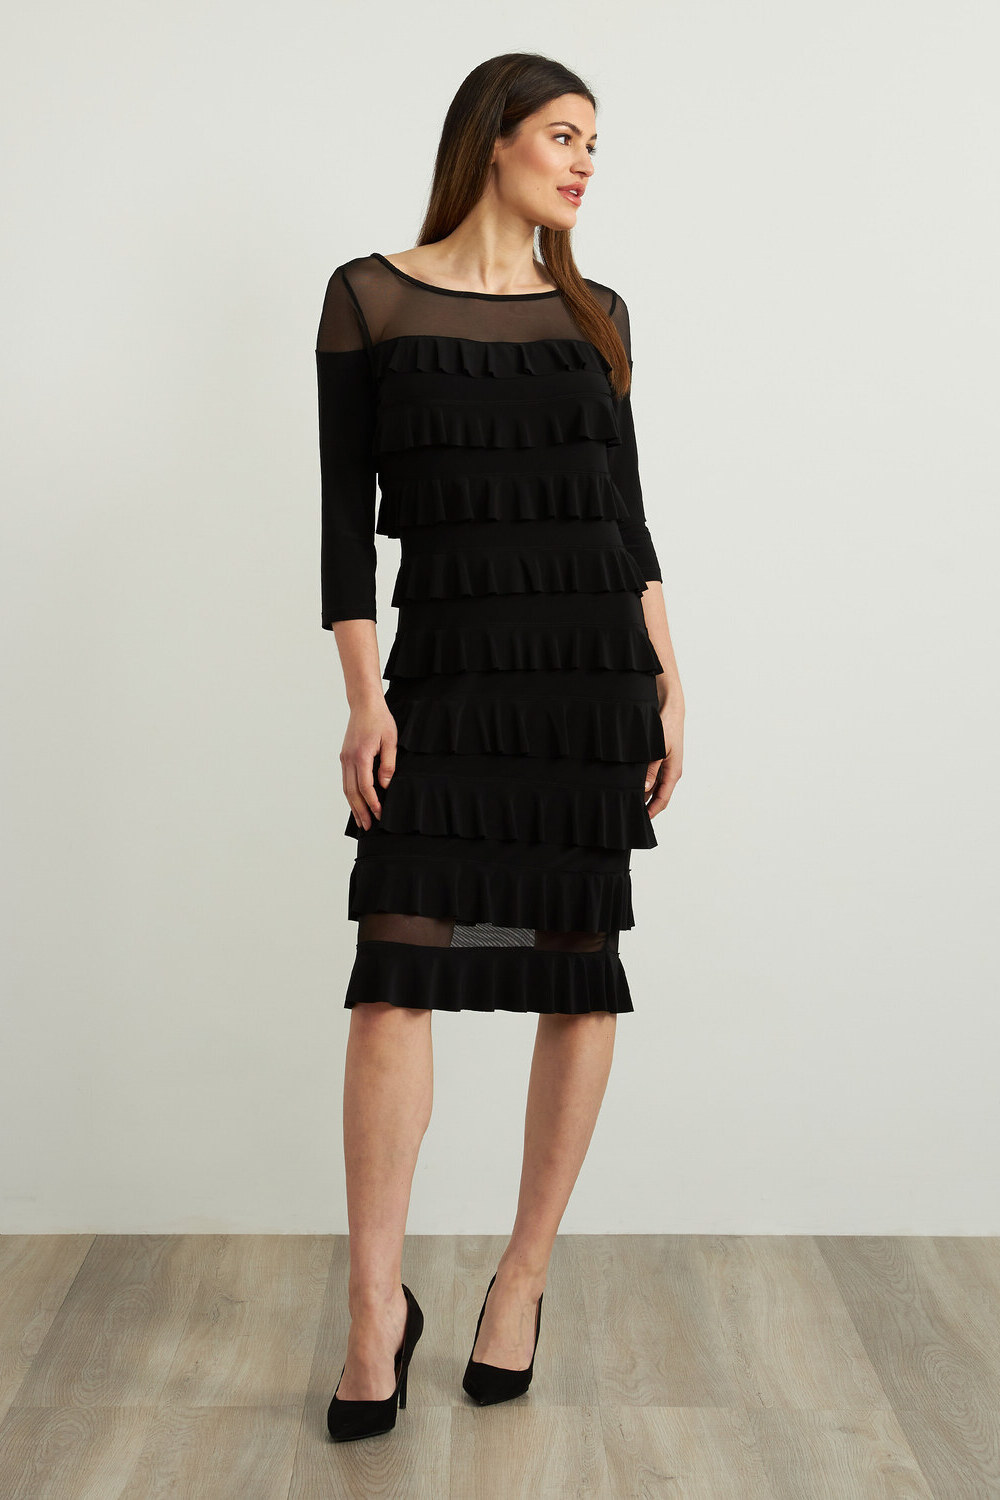 Joseph Ribkoff Tiered Ruffle Dress Style 213457. Black